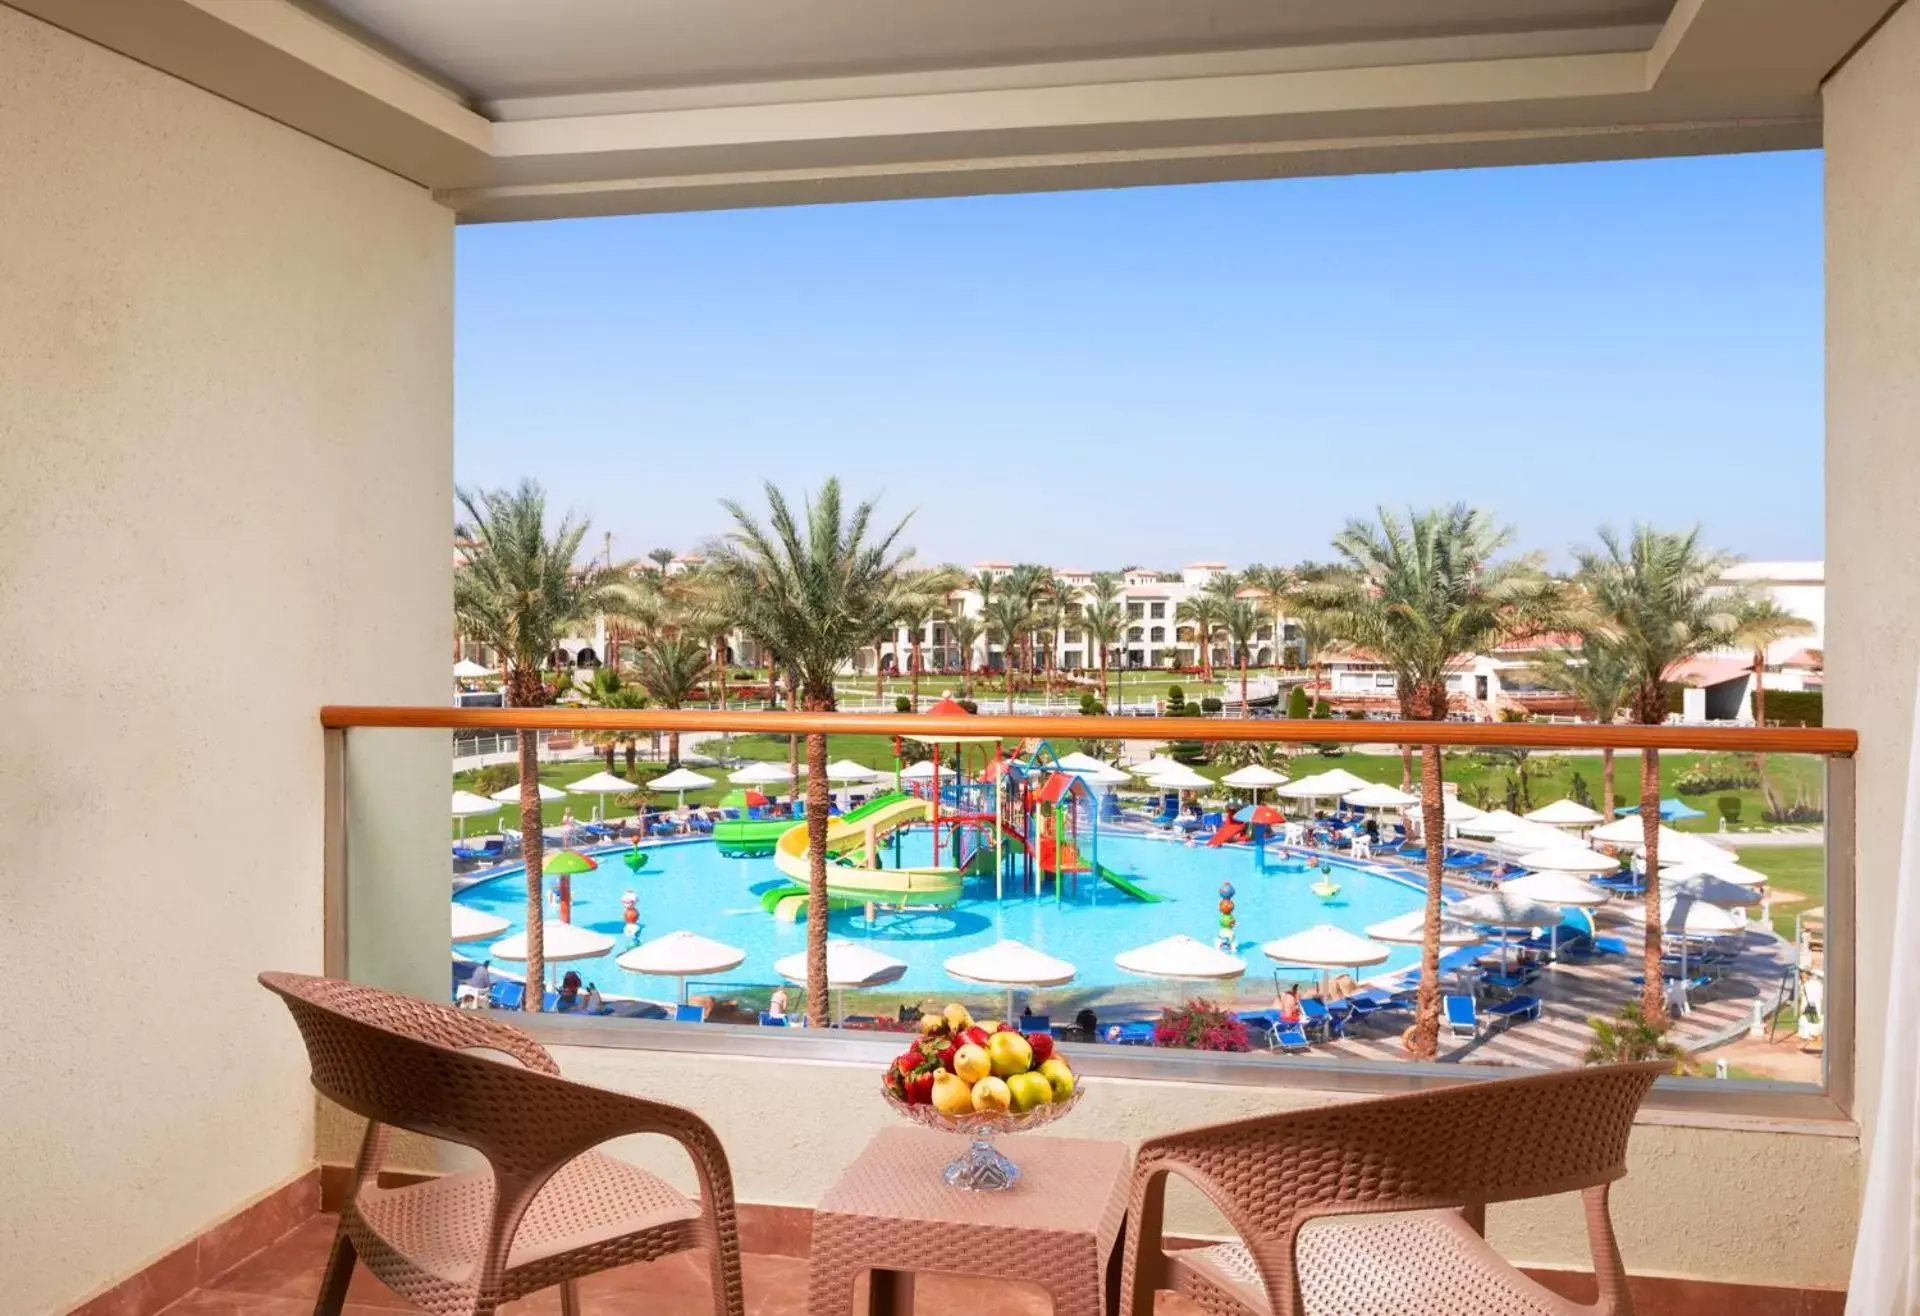 Swimming pool, Pool View in Pickalbatros Dana Beach Resort - Hurghada